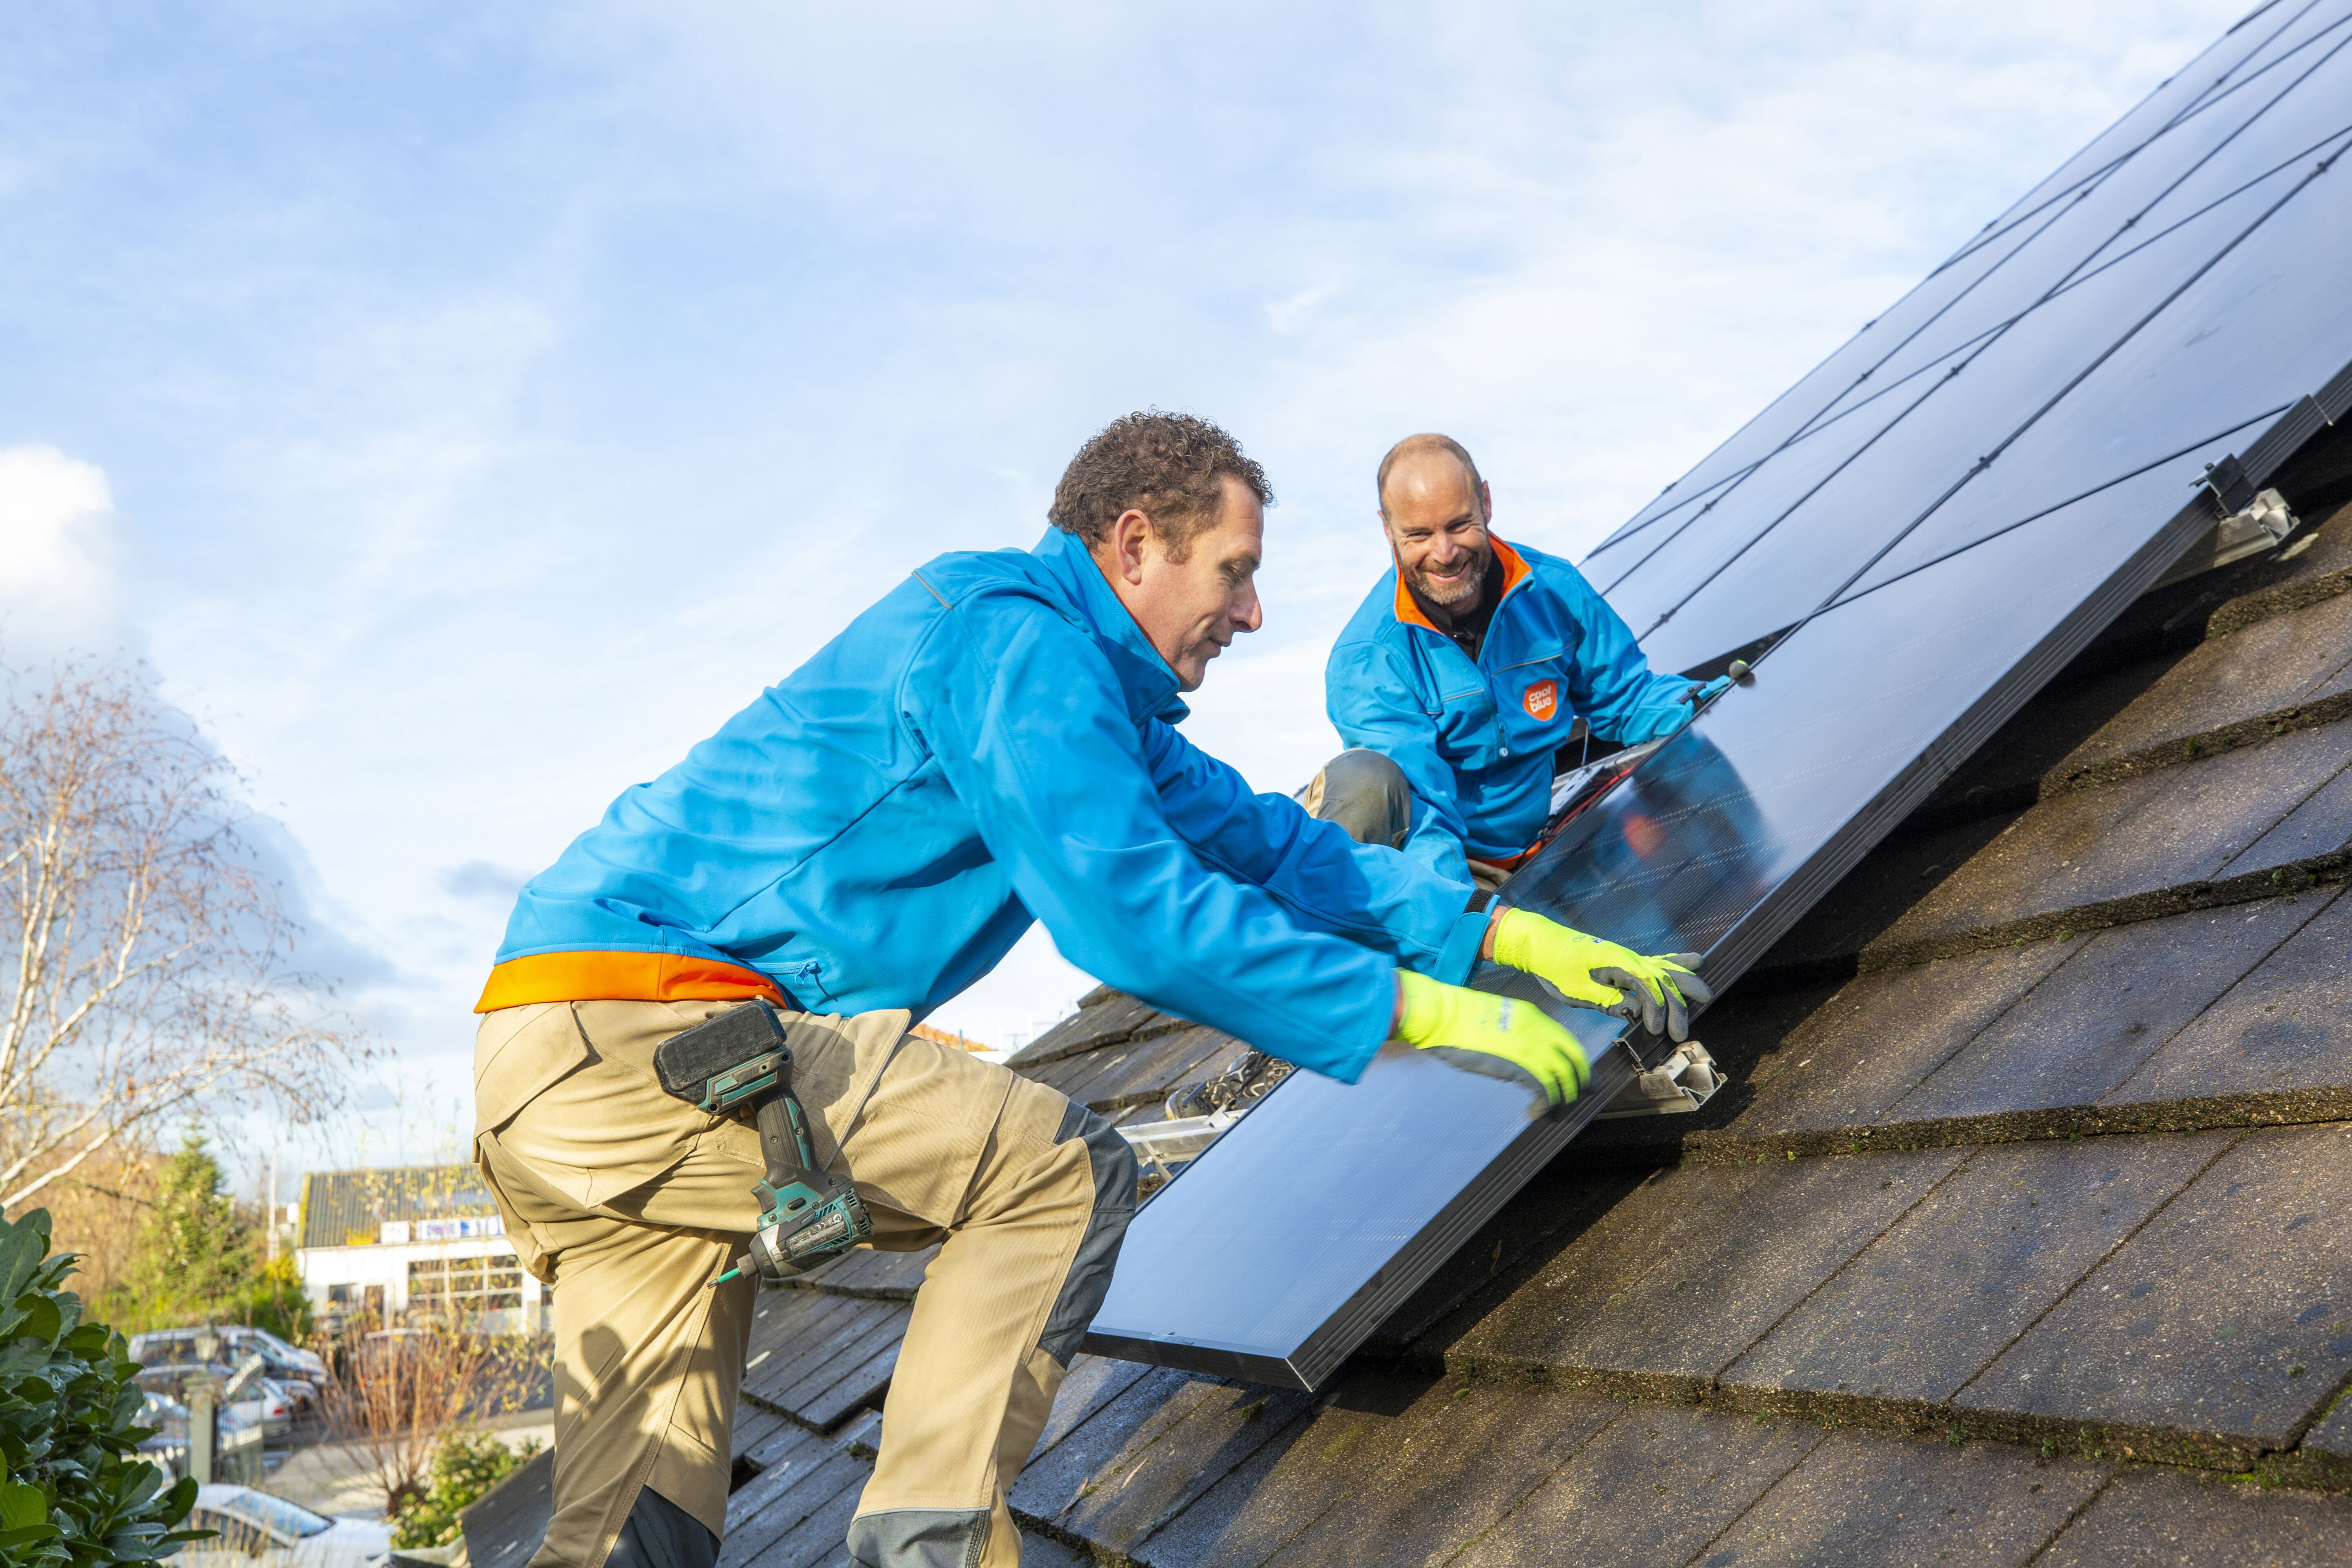 Webwinkel Coolblue stapt in de markt voor de verkoop en installatie van zonnepanelen. Daarbij zijn ook de terugverdientijd en subsidieregelingen van belang, zoals de salderingsregeling